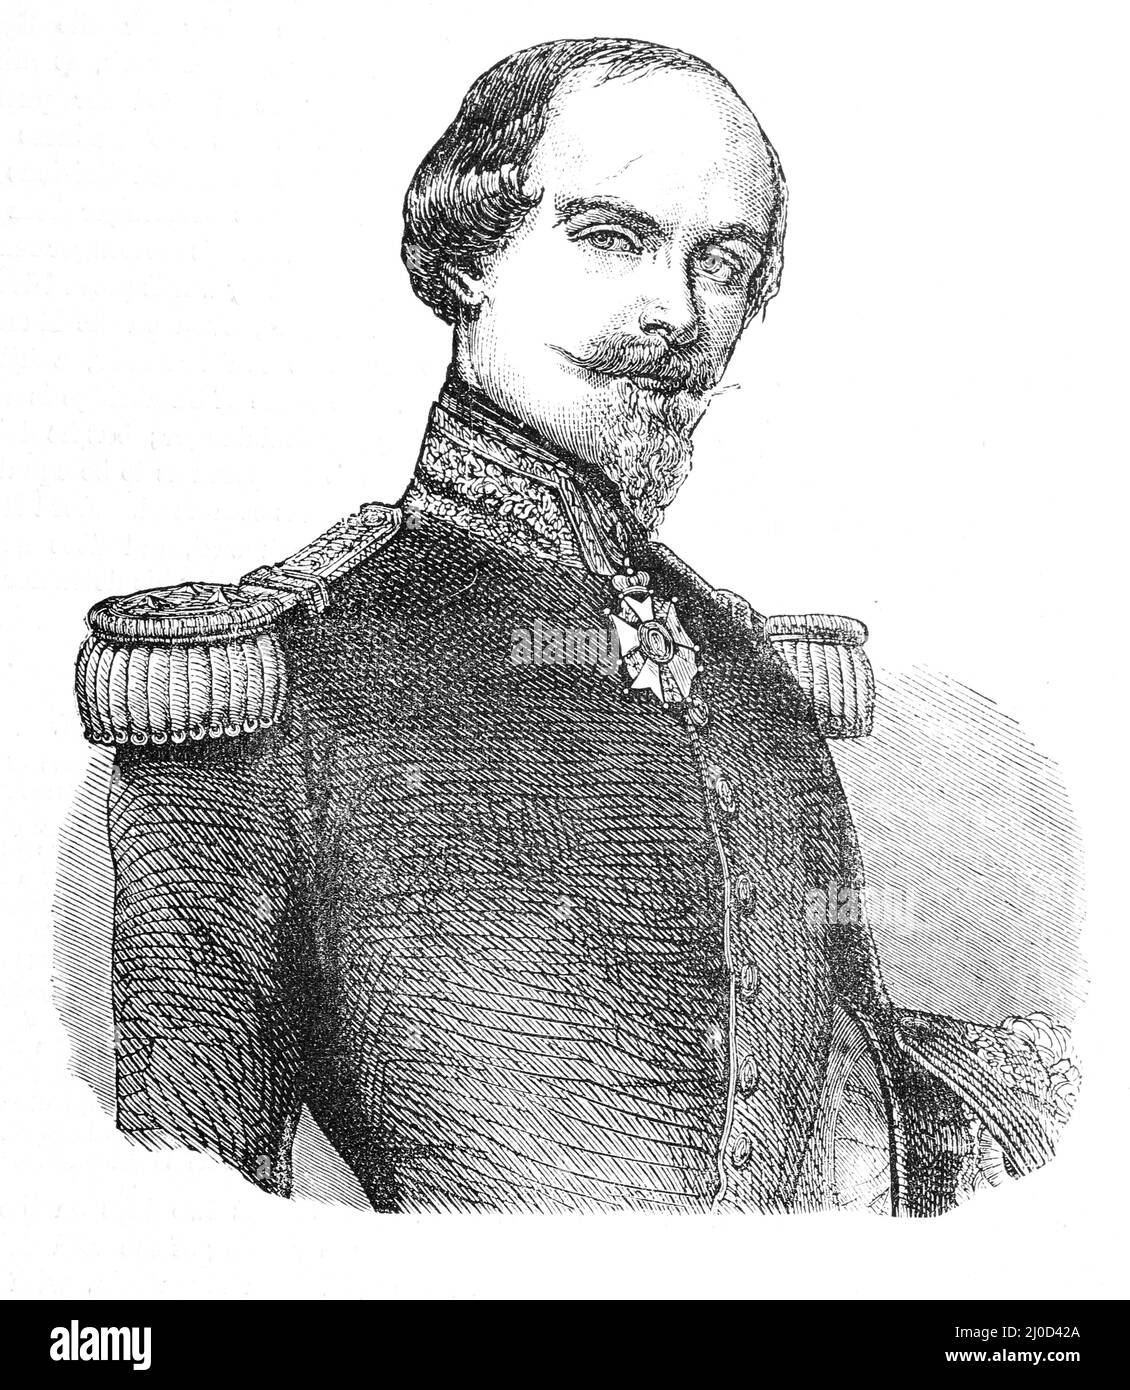 Porträt von General François Marcellin Certain de Canrobert, cira 1850s zur Zeit des Krimkrieges. Schwarz-Weiß-Illustration Stockfoto